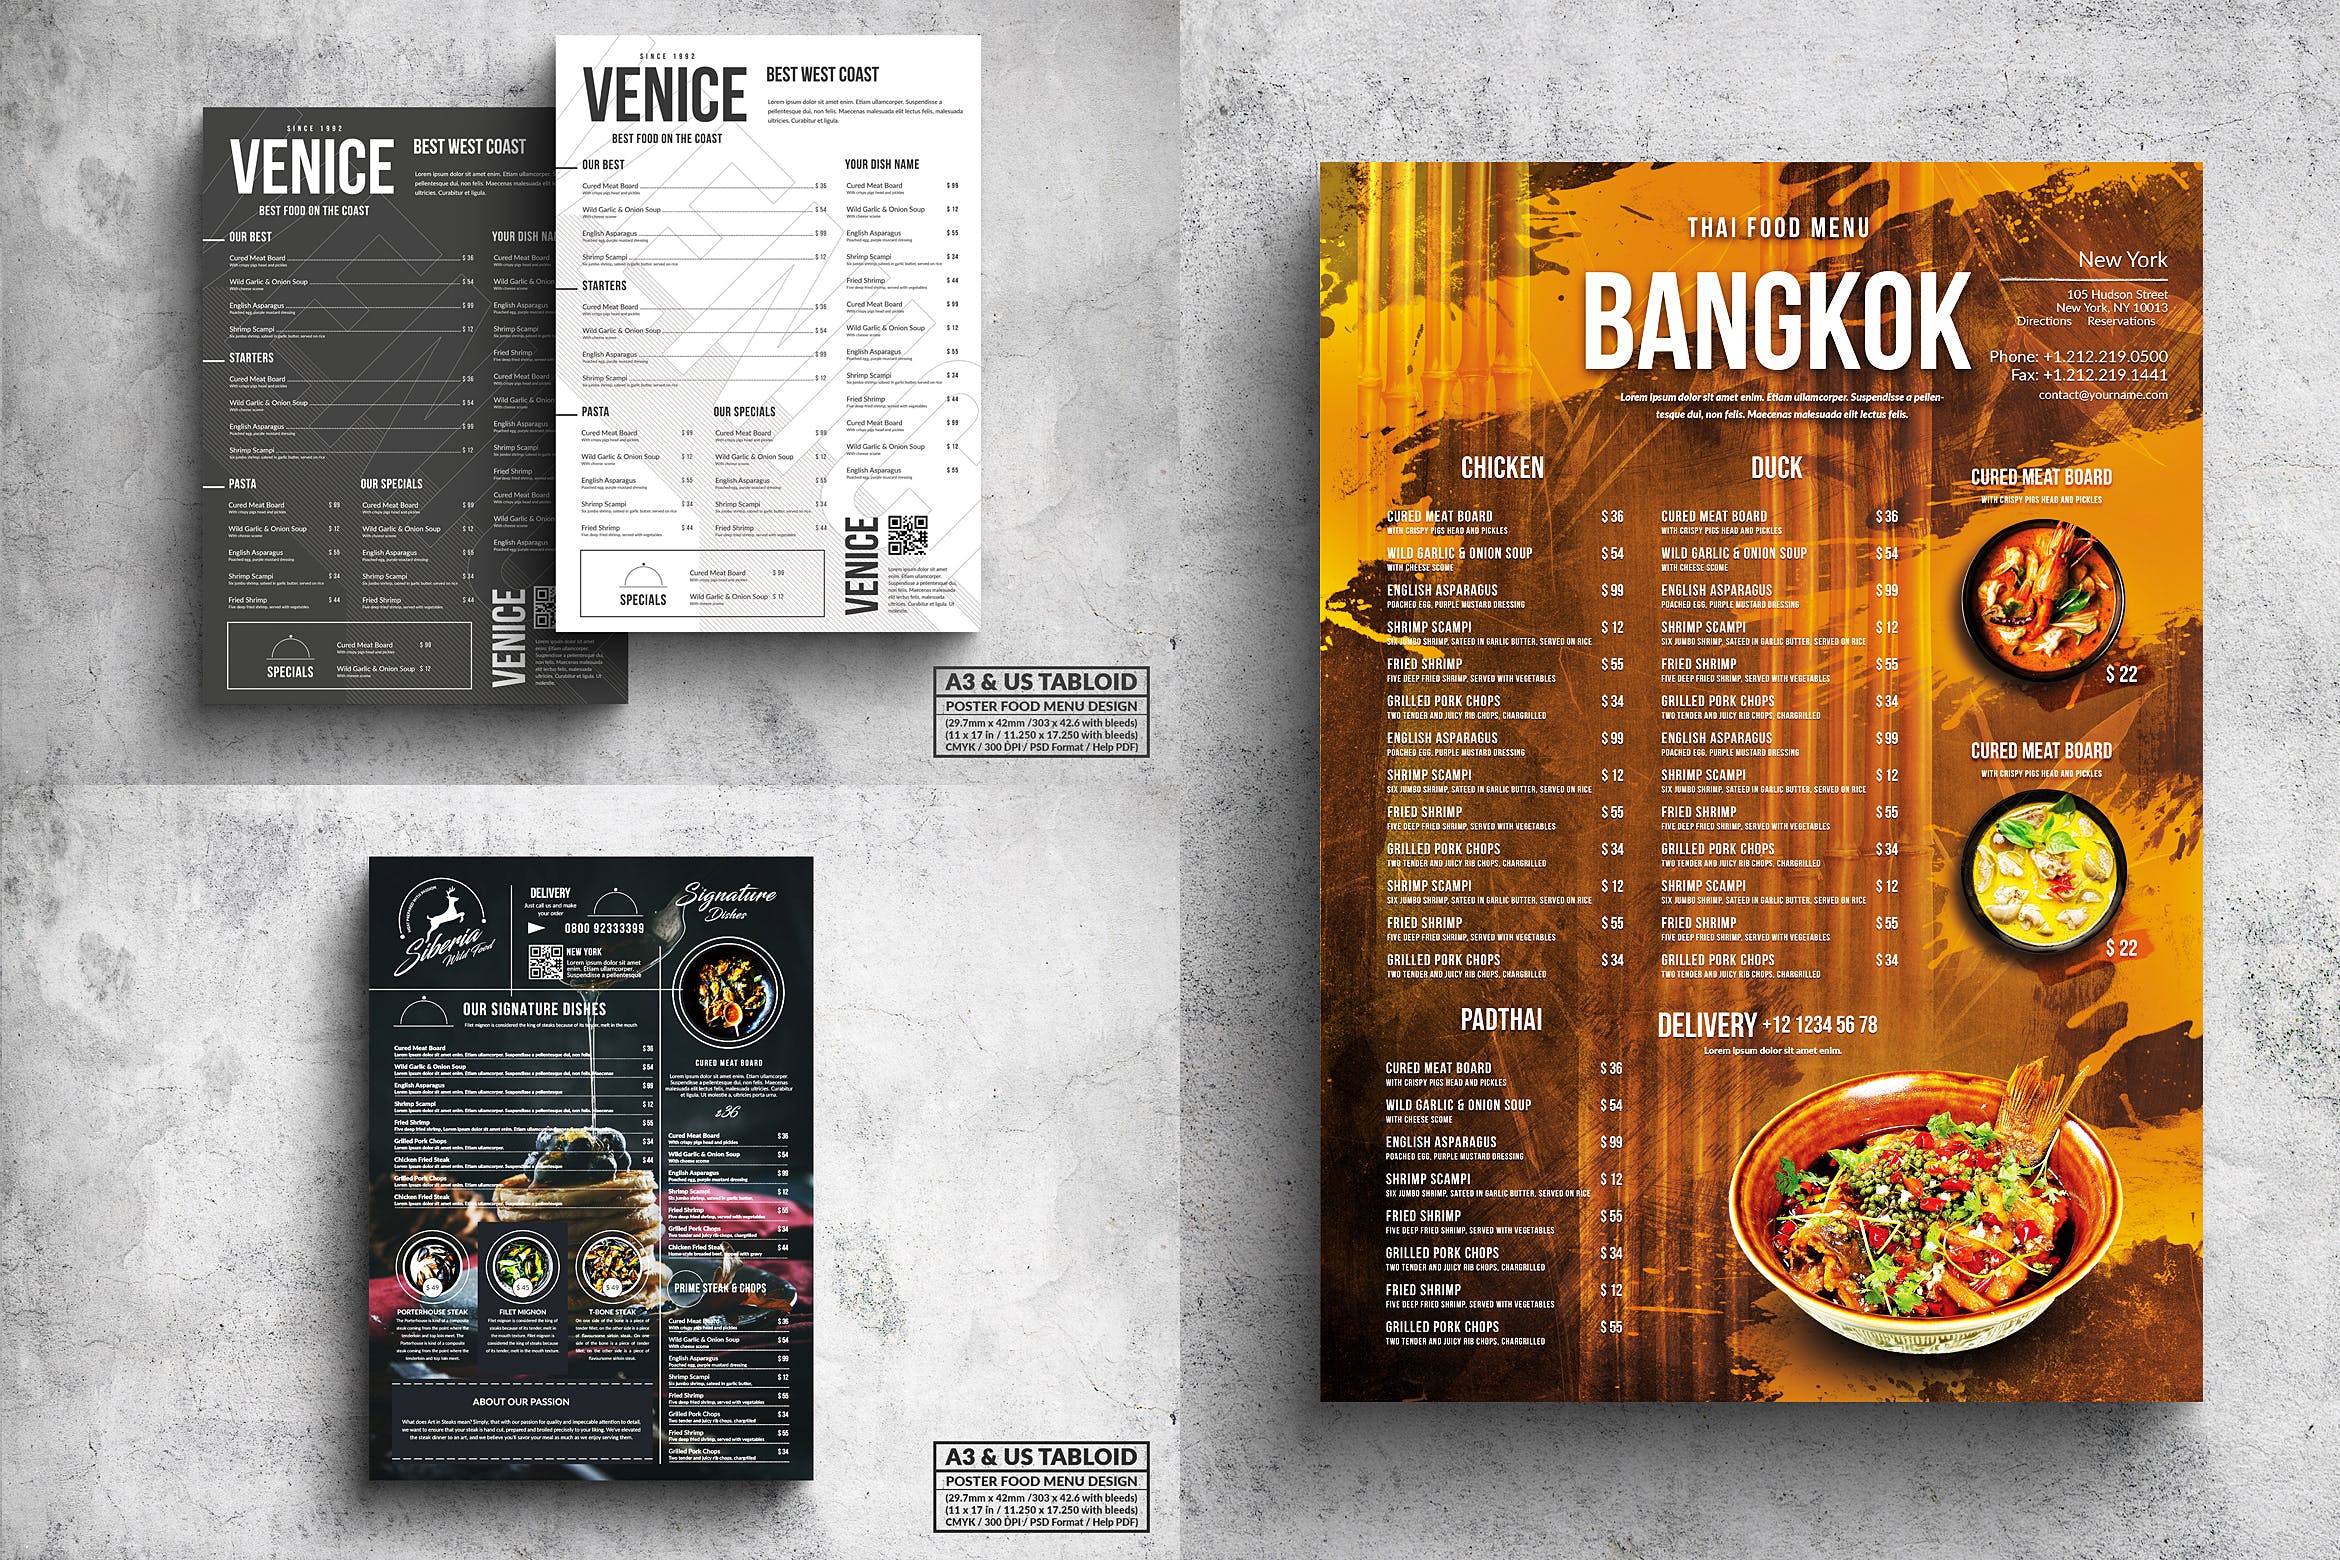 多合一餐馆餐厅菜单海报PSD素材非凡图库精选模板v2 Poster Food Menu A3 & US Tabloid Bundle插图